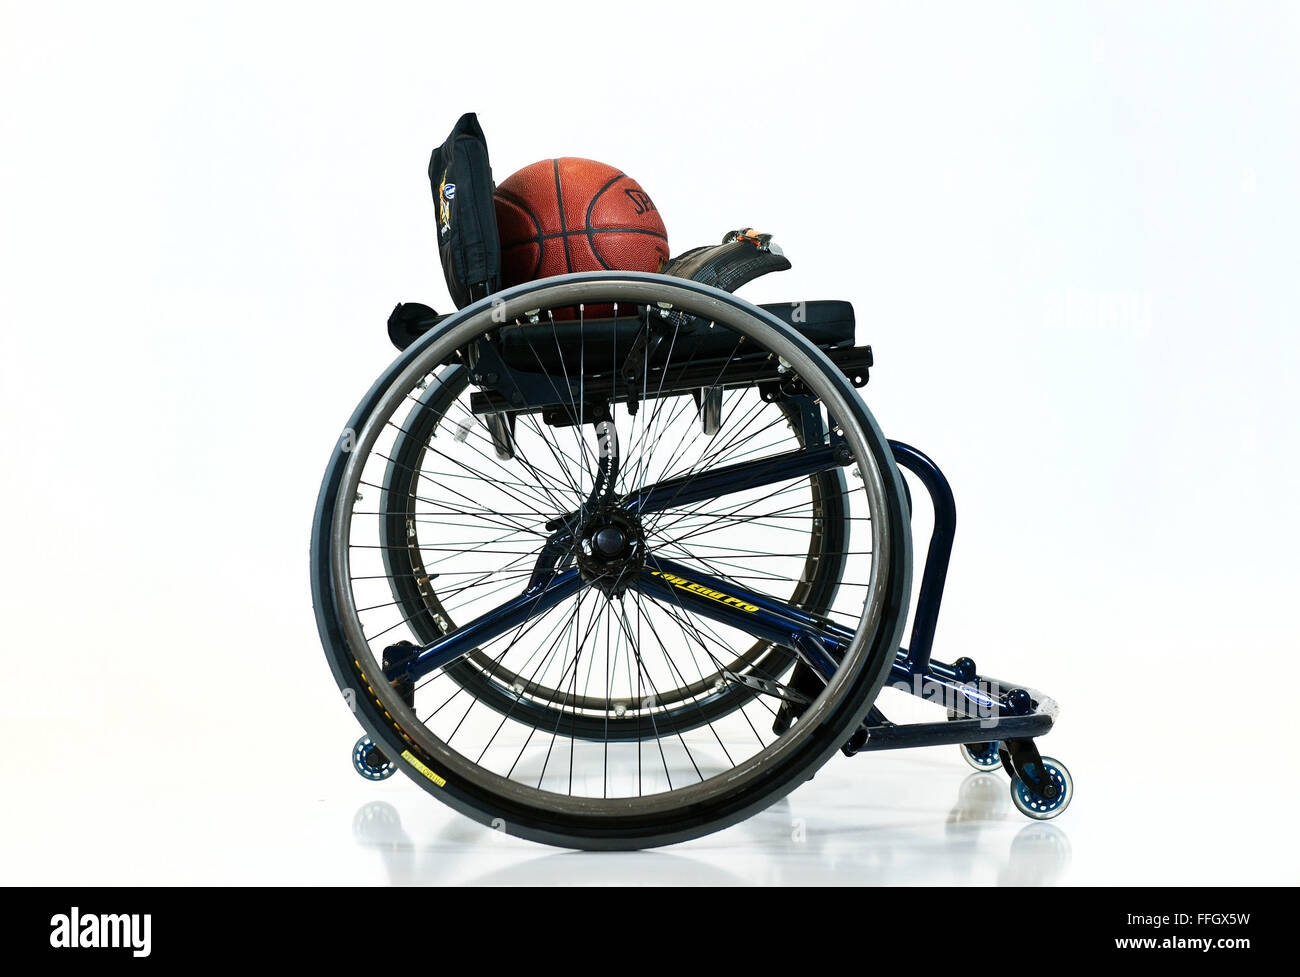 Juegos de guerrero juegos de baloncesto en silla de ruedas siguen las mismas reglas que la NCAA con algunas modificaciones para acomodar el juego de silla de ruedas. Cada equipo es necesario tener al menos dos jugadores con discapacidades en las extremidades inferiores en el tribunal en todo momento. Foto de stock